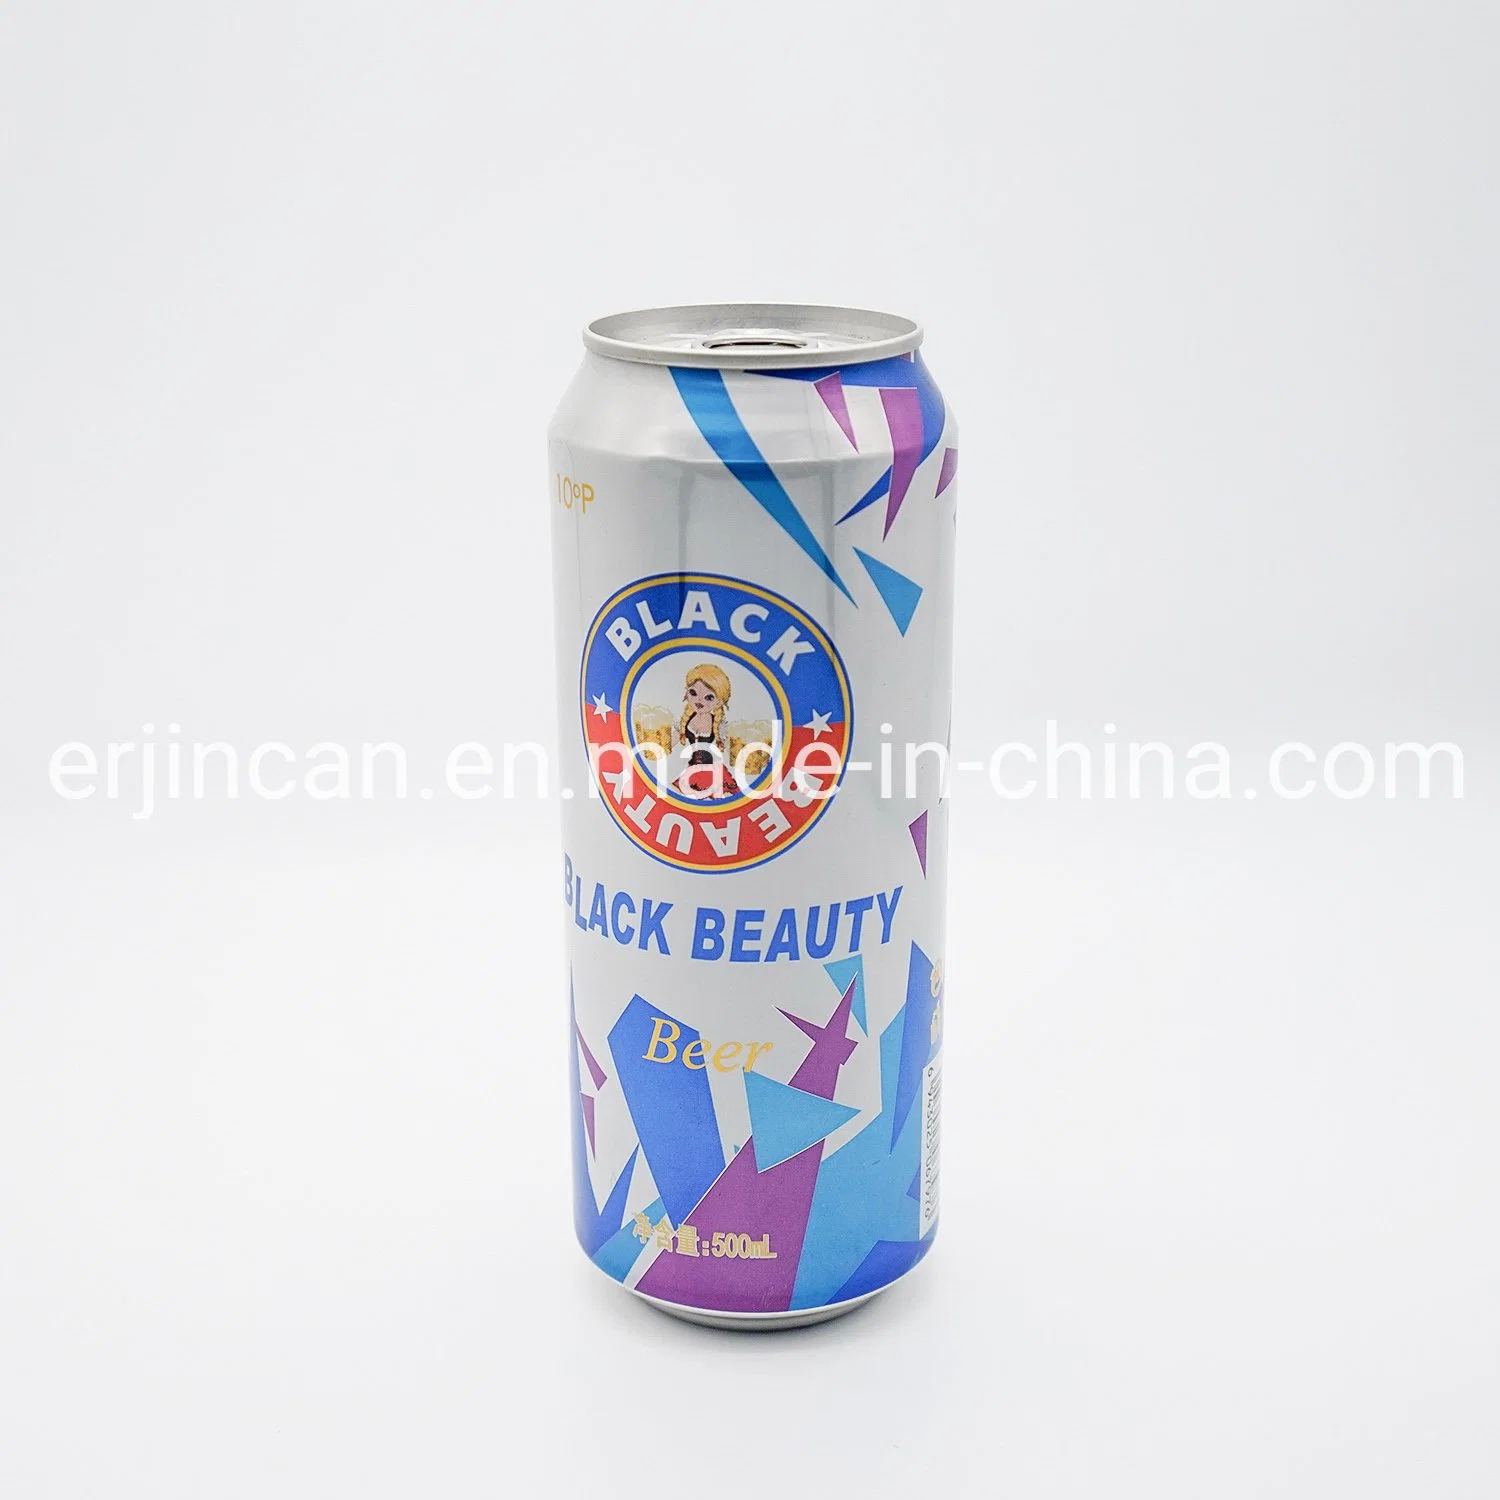 OEM Black Beauty Lager Malt Beer Alcohol 5.0% Vol